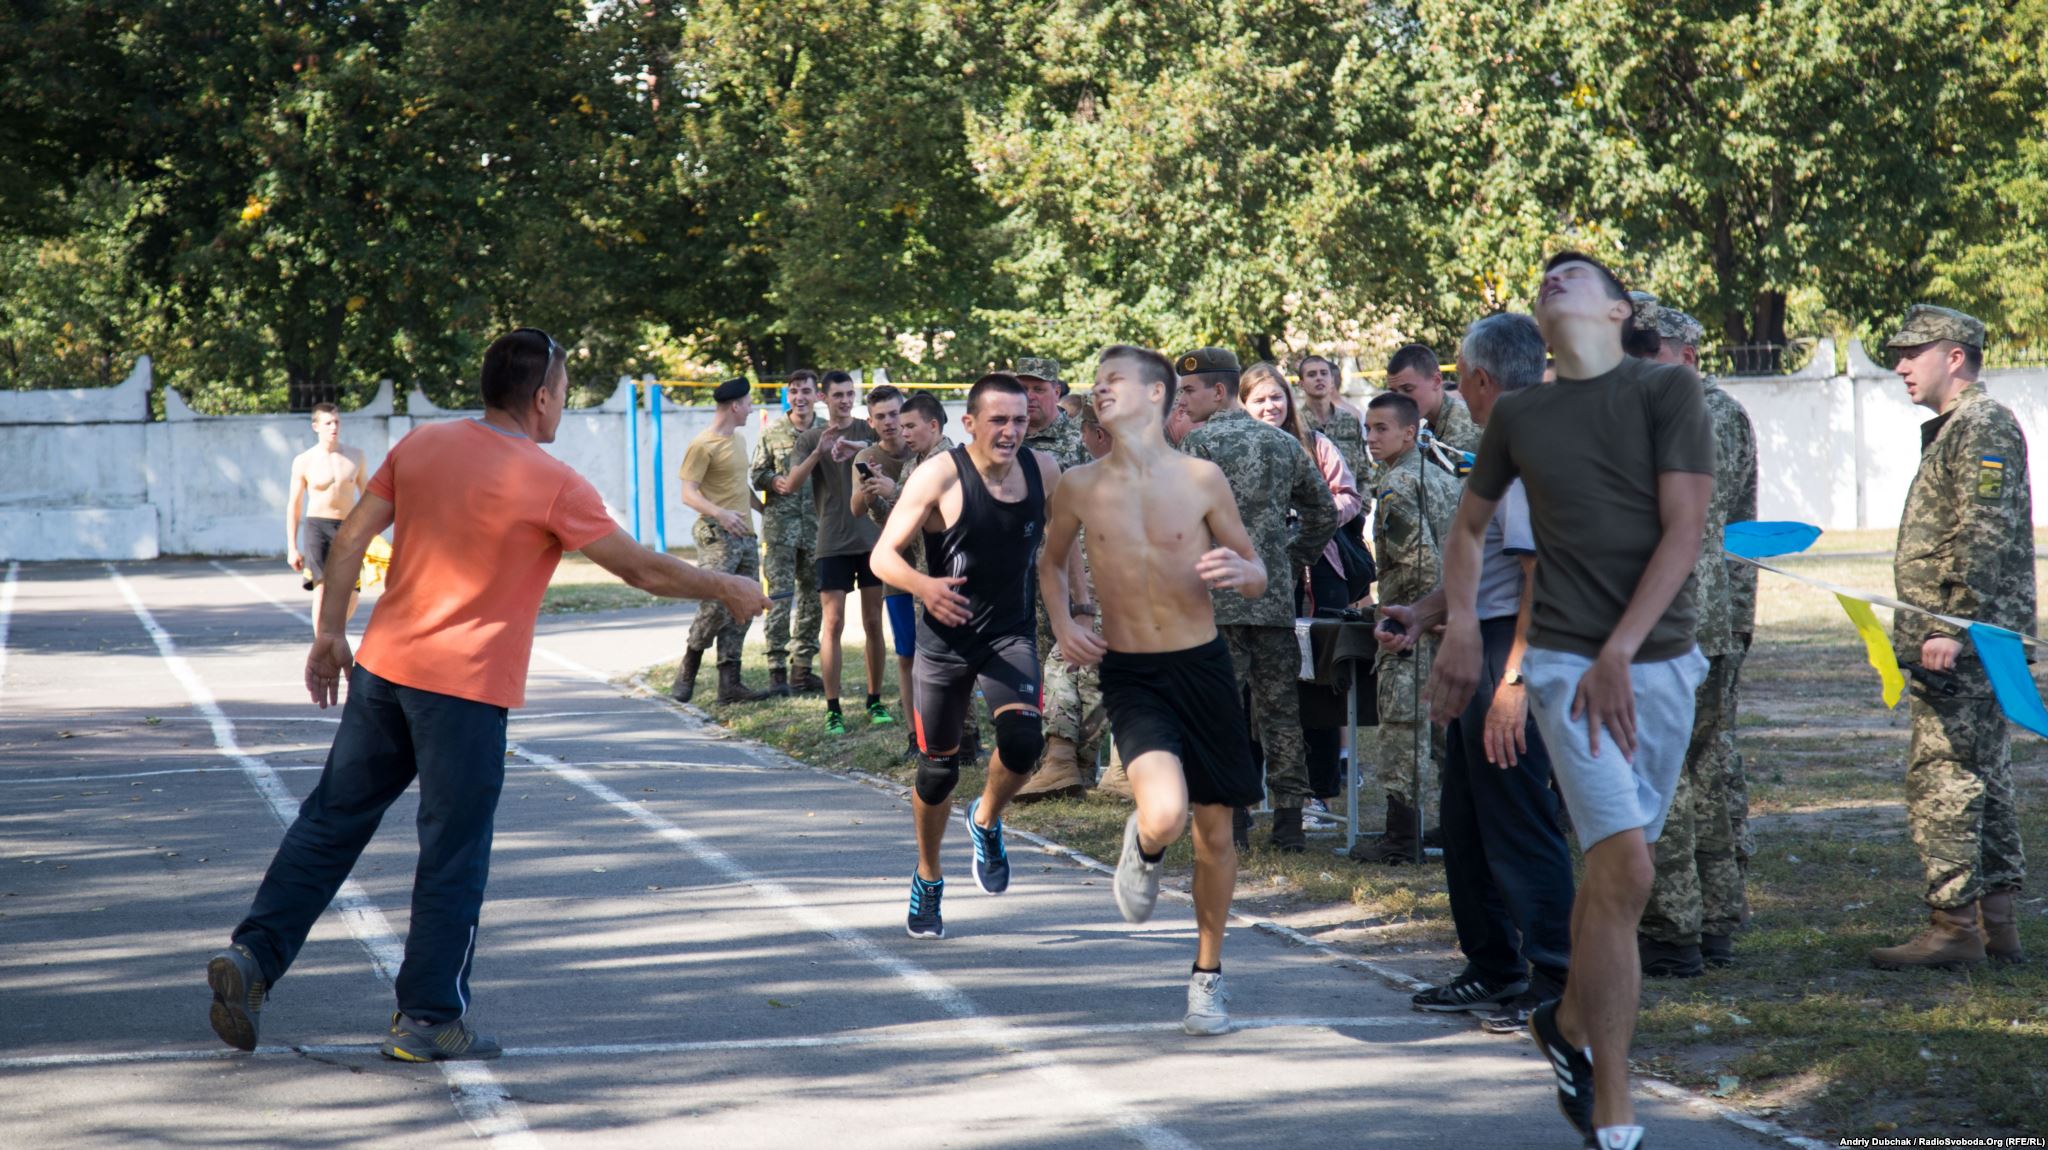 Біг на 1000 метрів (фотограф Андрей Дубчак / Andriy Dubchak)